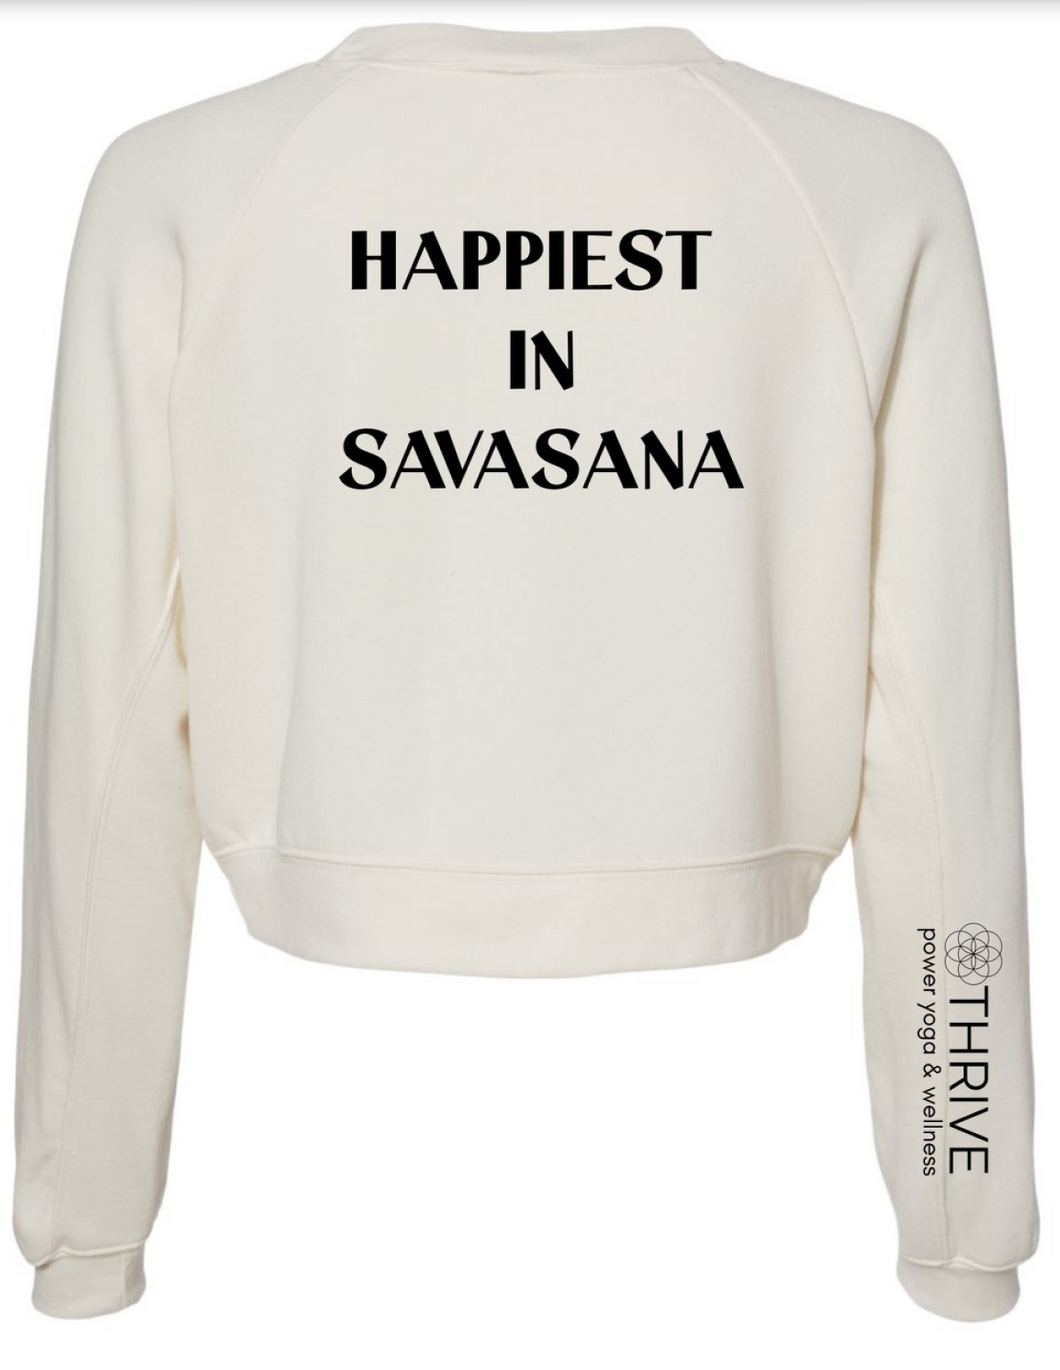 Happiest Here Sweatshirt